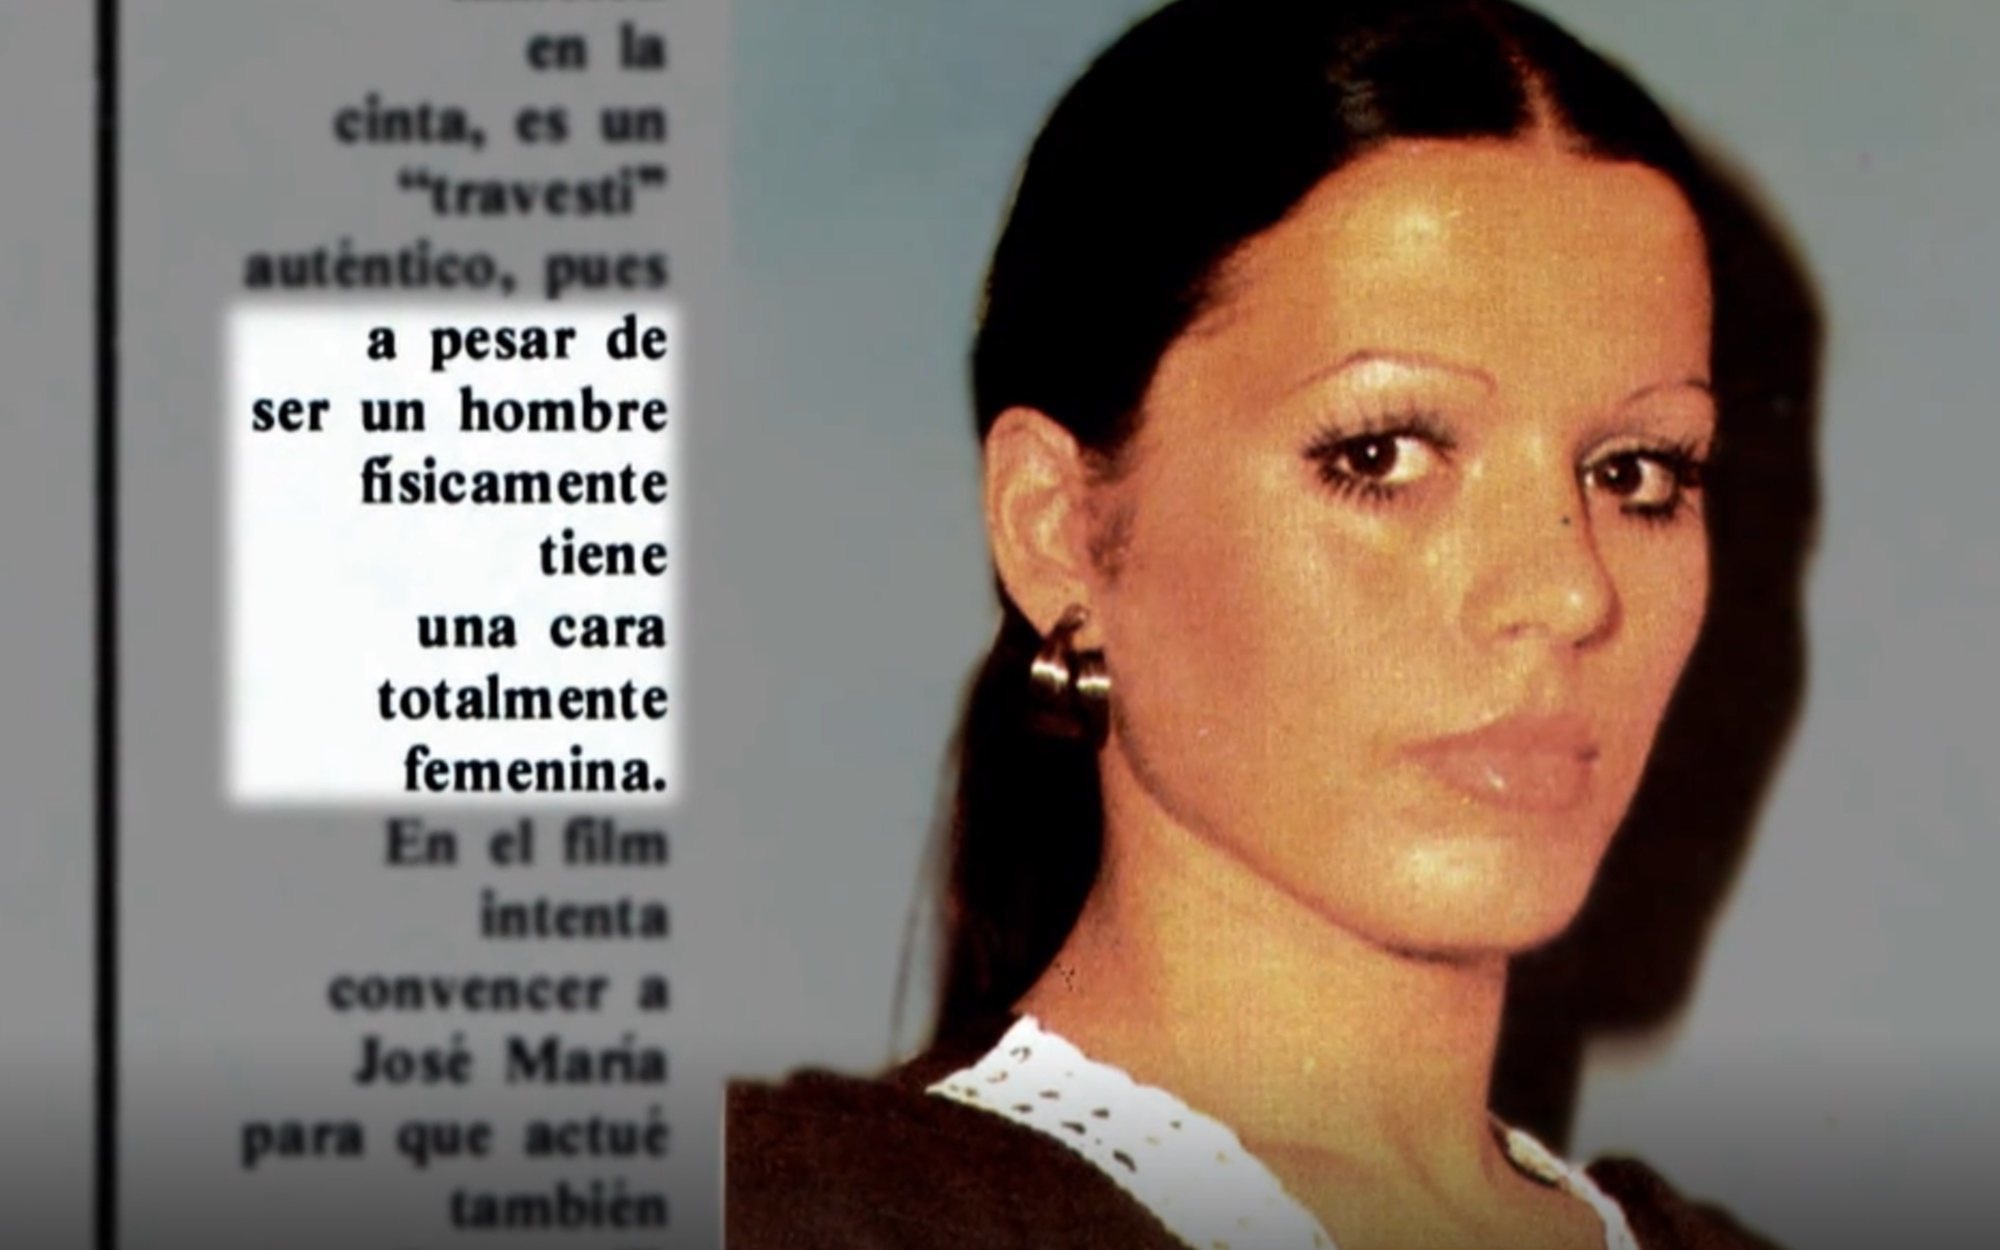 Las tremendas barbaridades que tuvo que escuchar Bibiana Fernández en los medios por ser transexual